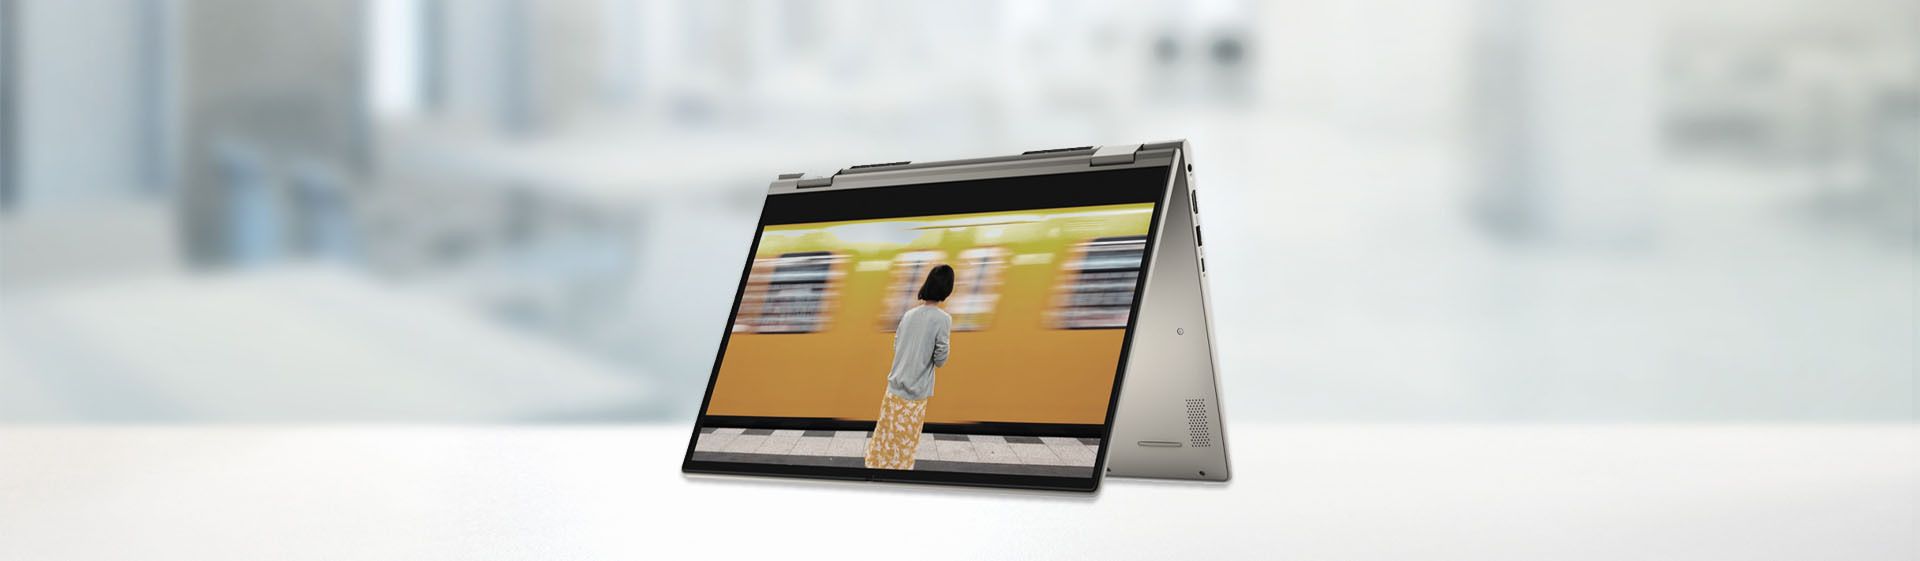 Melhor notebook Dell em 2020: veja 6 modelos para comprar